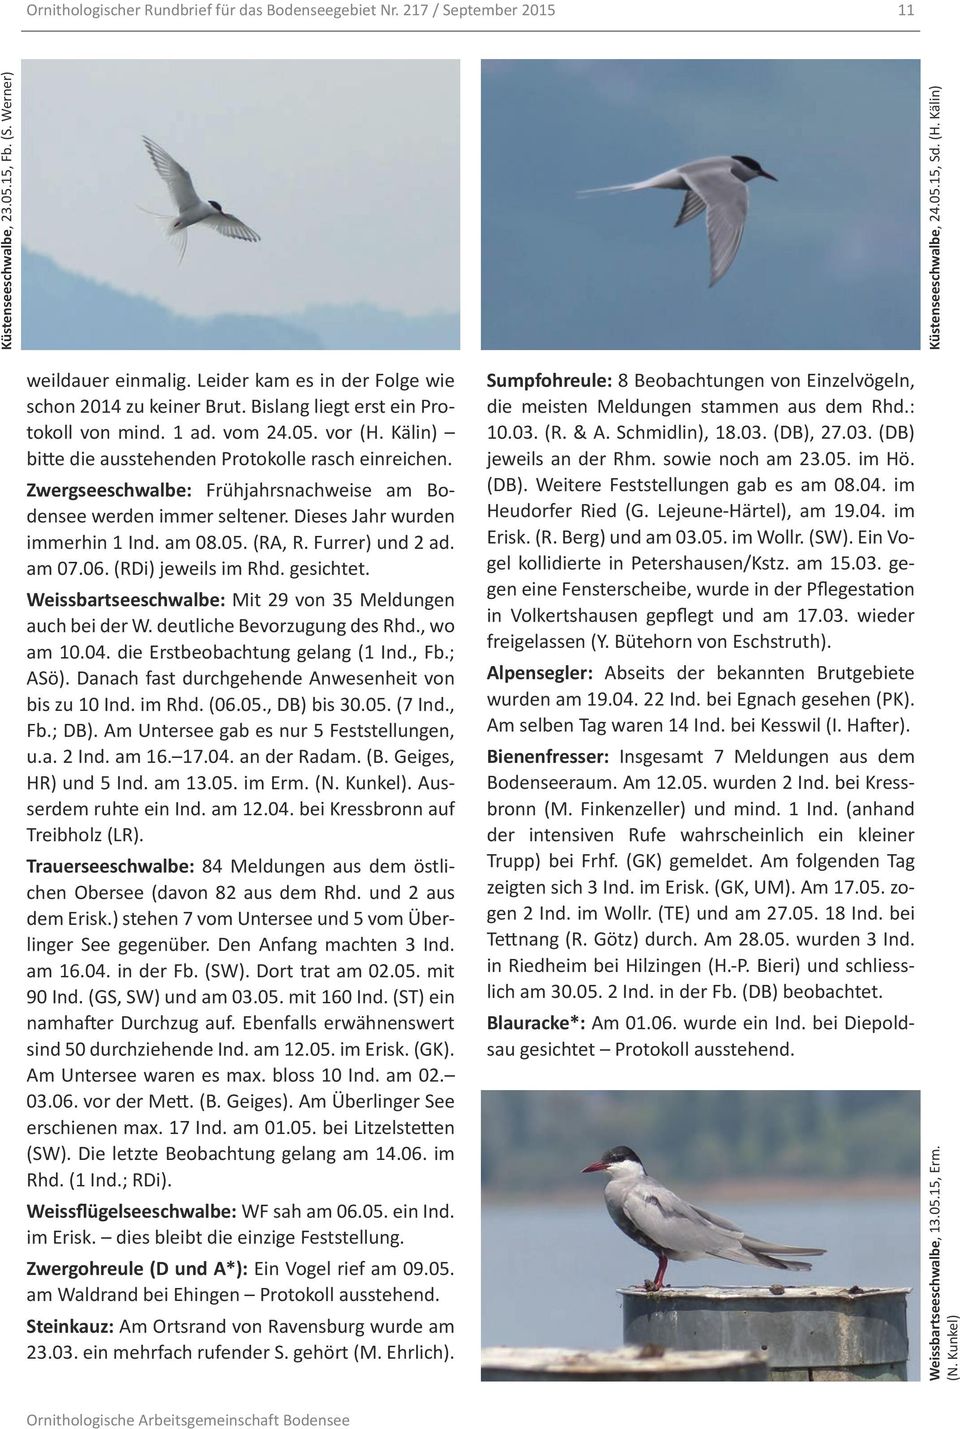 Zwergseeschwalbe: Frühjahrsnachweise am Bodensee werden immer seltener. Dieses Jahr wurden immerhin 1 Ind. am 08.05. (RA, R. Furrer) und 2 ad. am 07.06. (RDi) jeweils im Rhd. gesichtet.